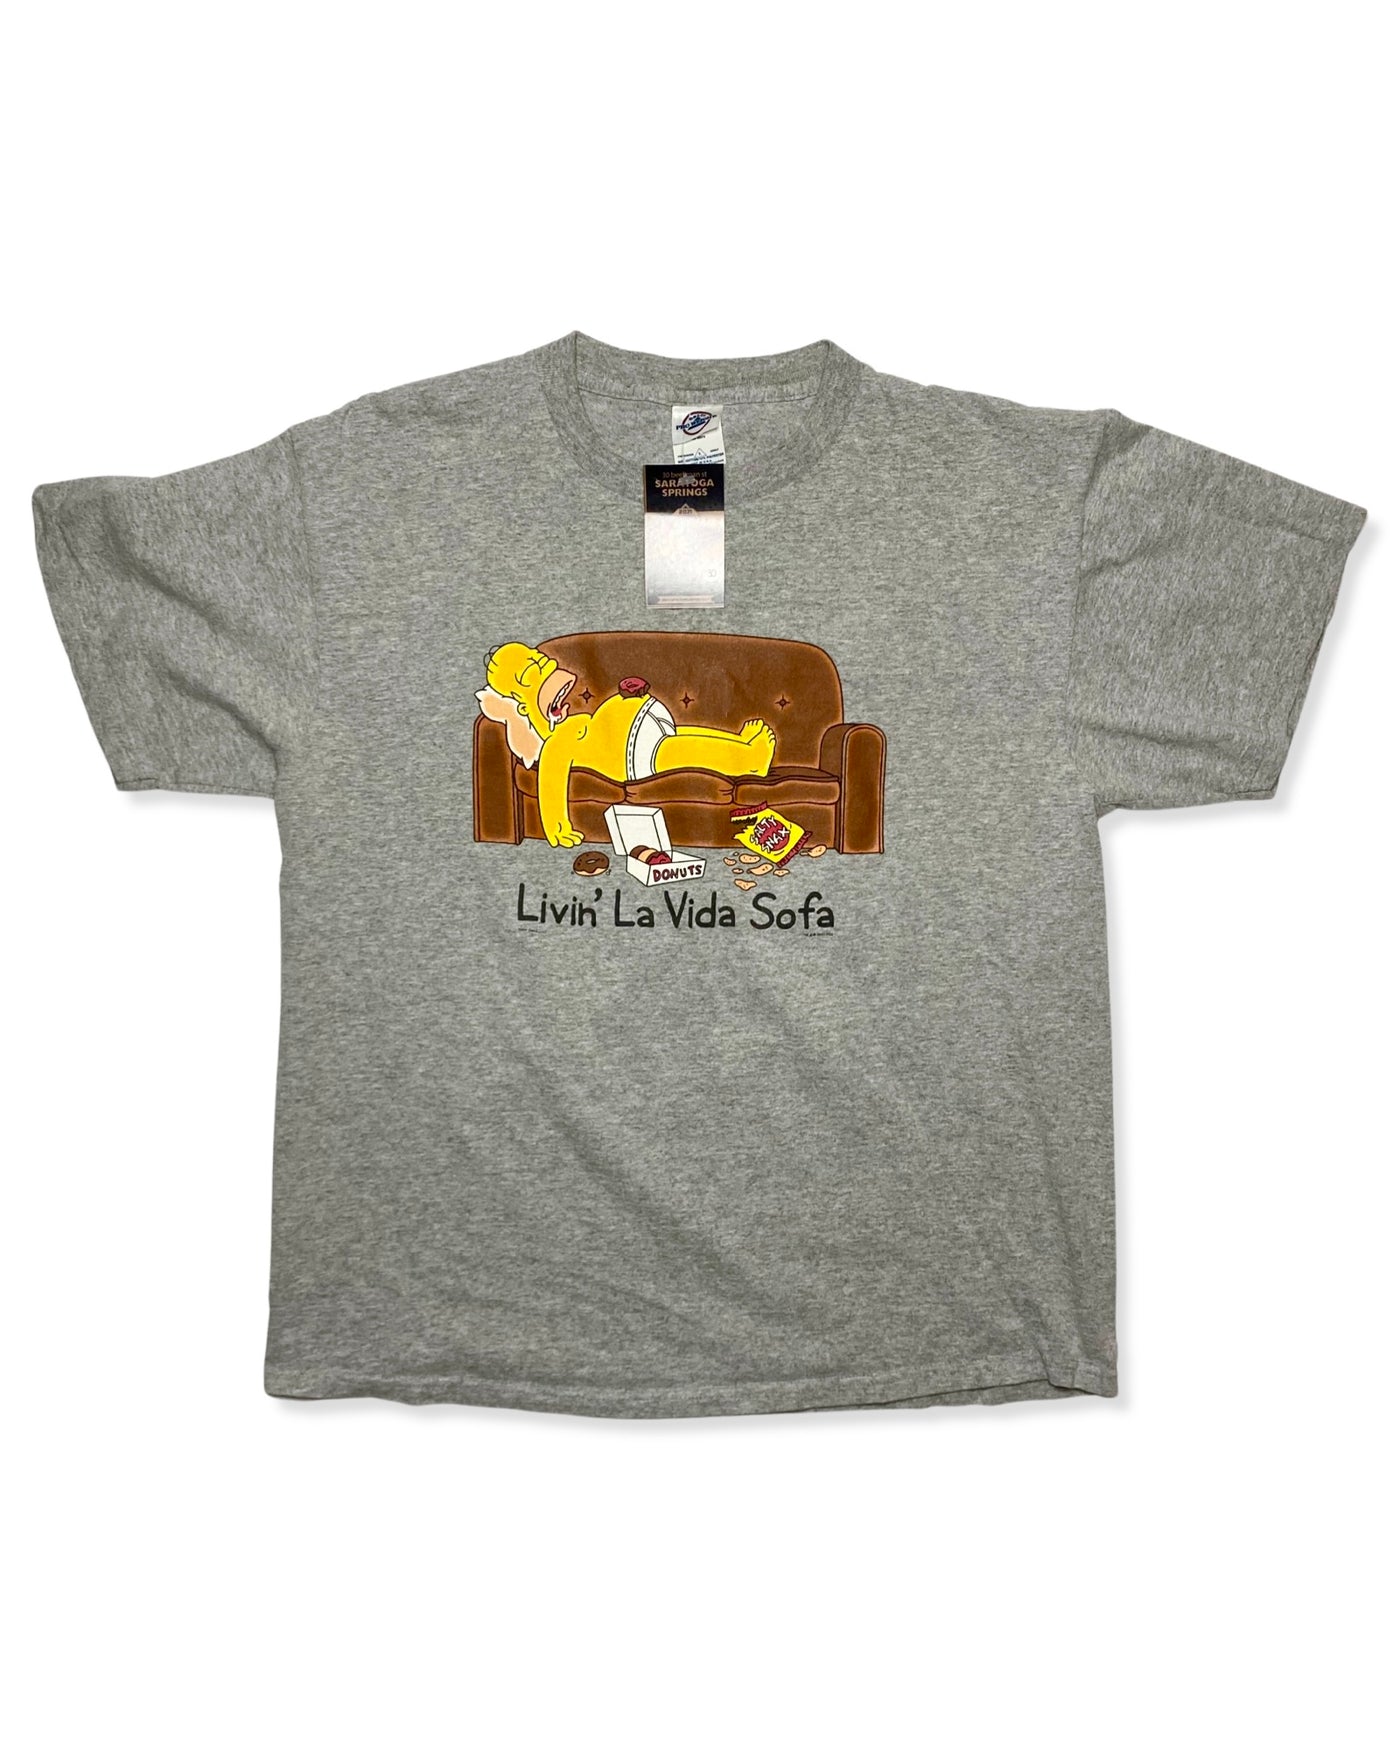 Vintage 2001 ‘La Vida Sofa’ Homer Simpson’s T-Shirt